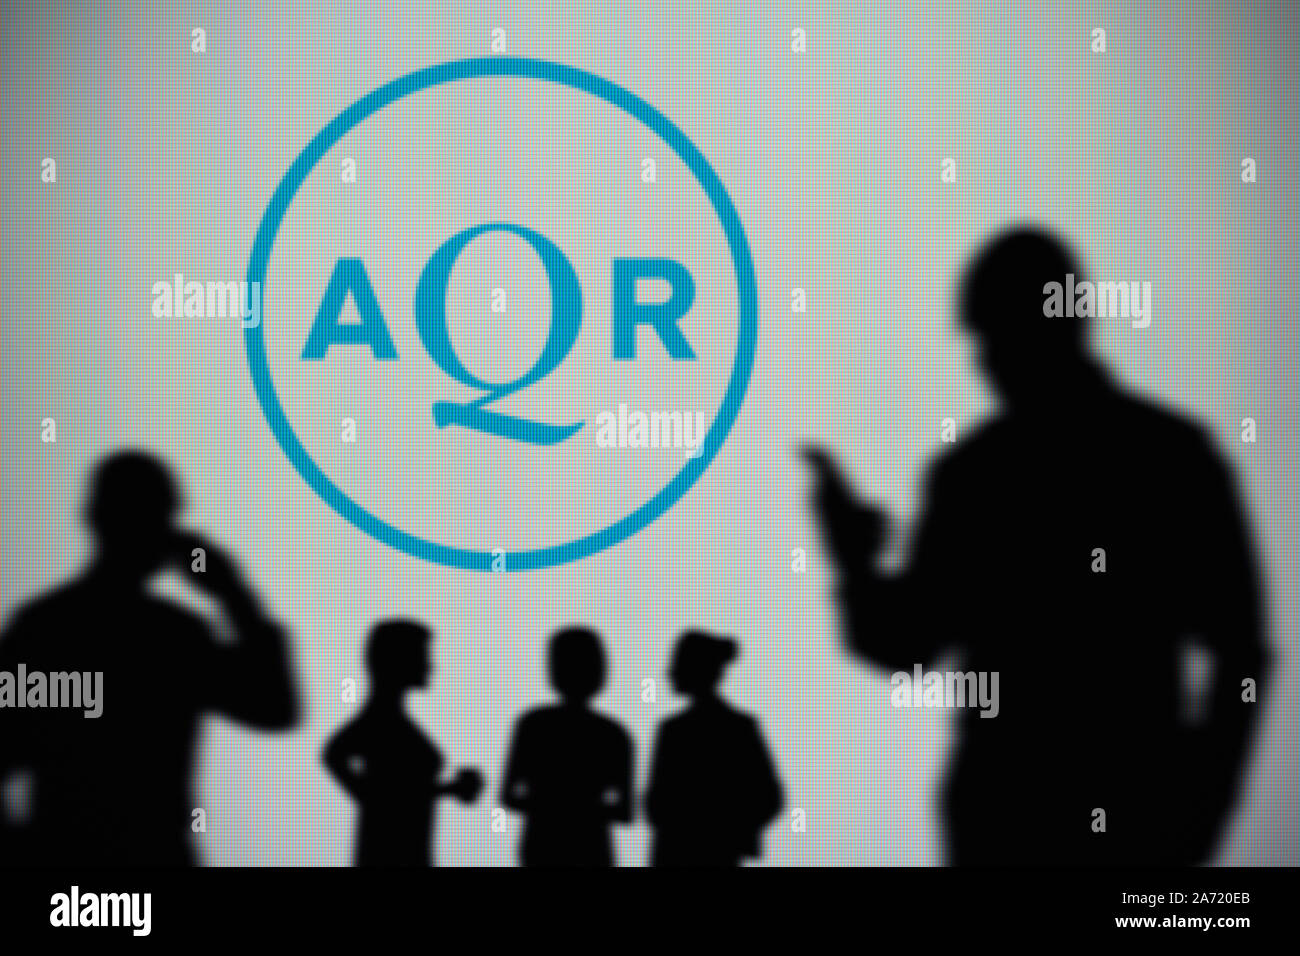 El AQR Capital Management logotipo es visto en una pantalla LED en el fondo mientras una silueta persona utiliza un smartphone (uso Editorial solamente) Foto de stock